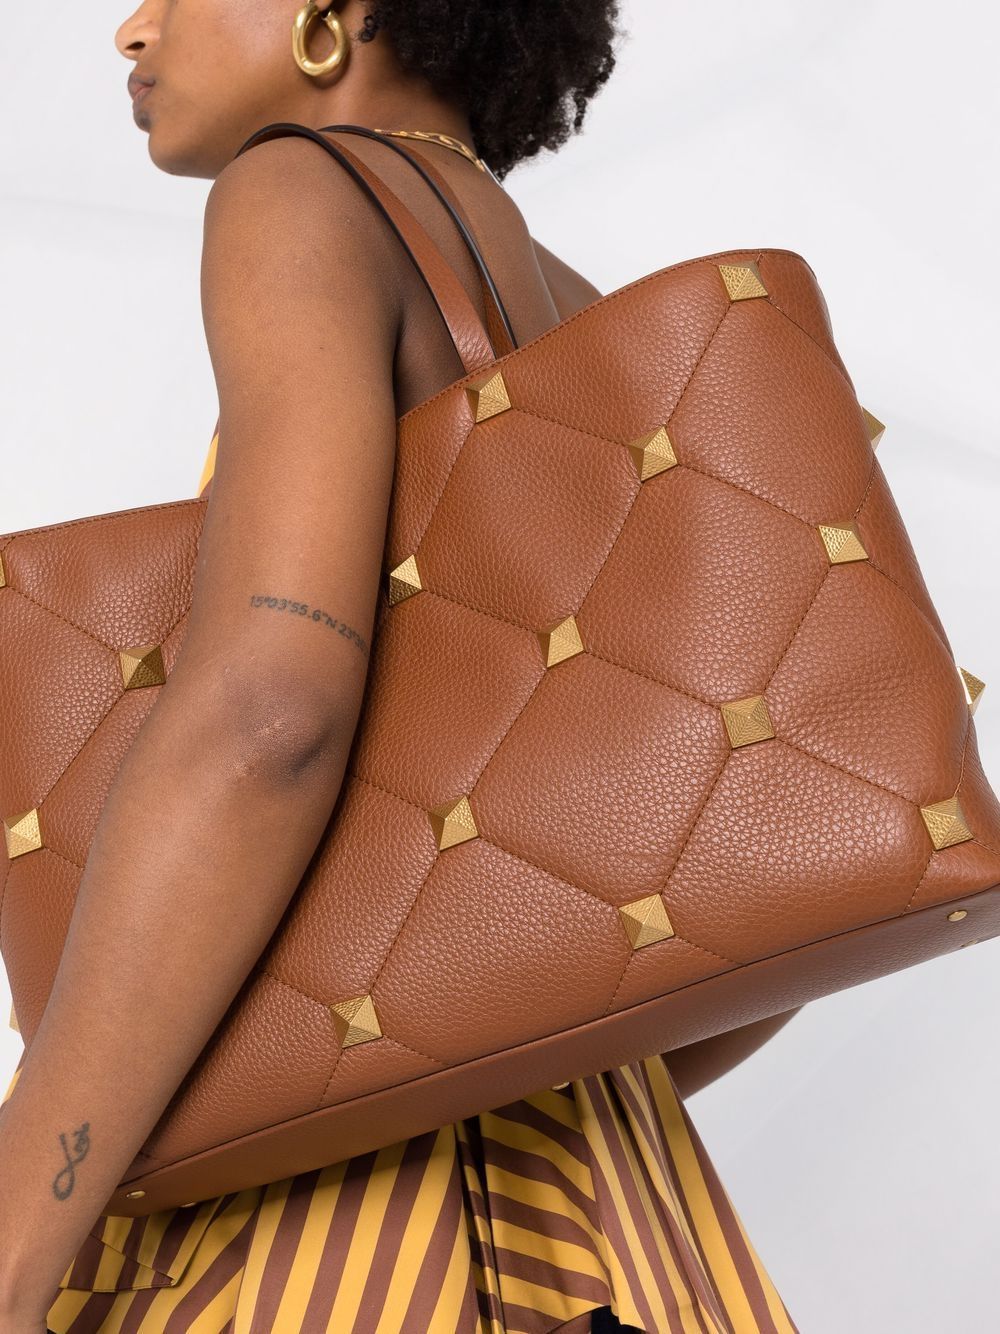 Túi xách tay đa năng sang trọng dành cho phụ nữ từ bộ sưu tập SELLERIA của Valentino Garavani - SS22